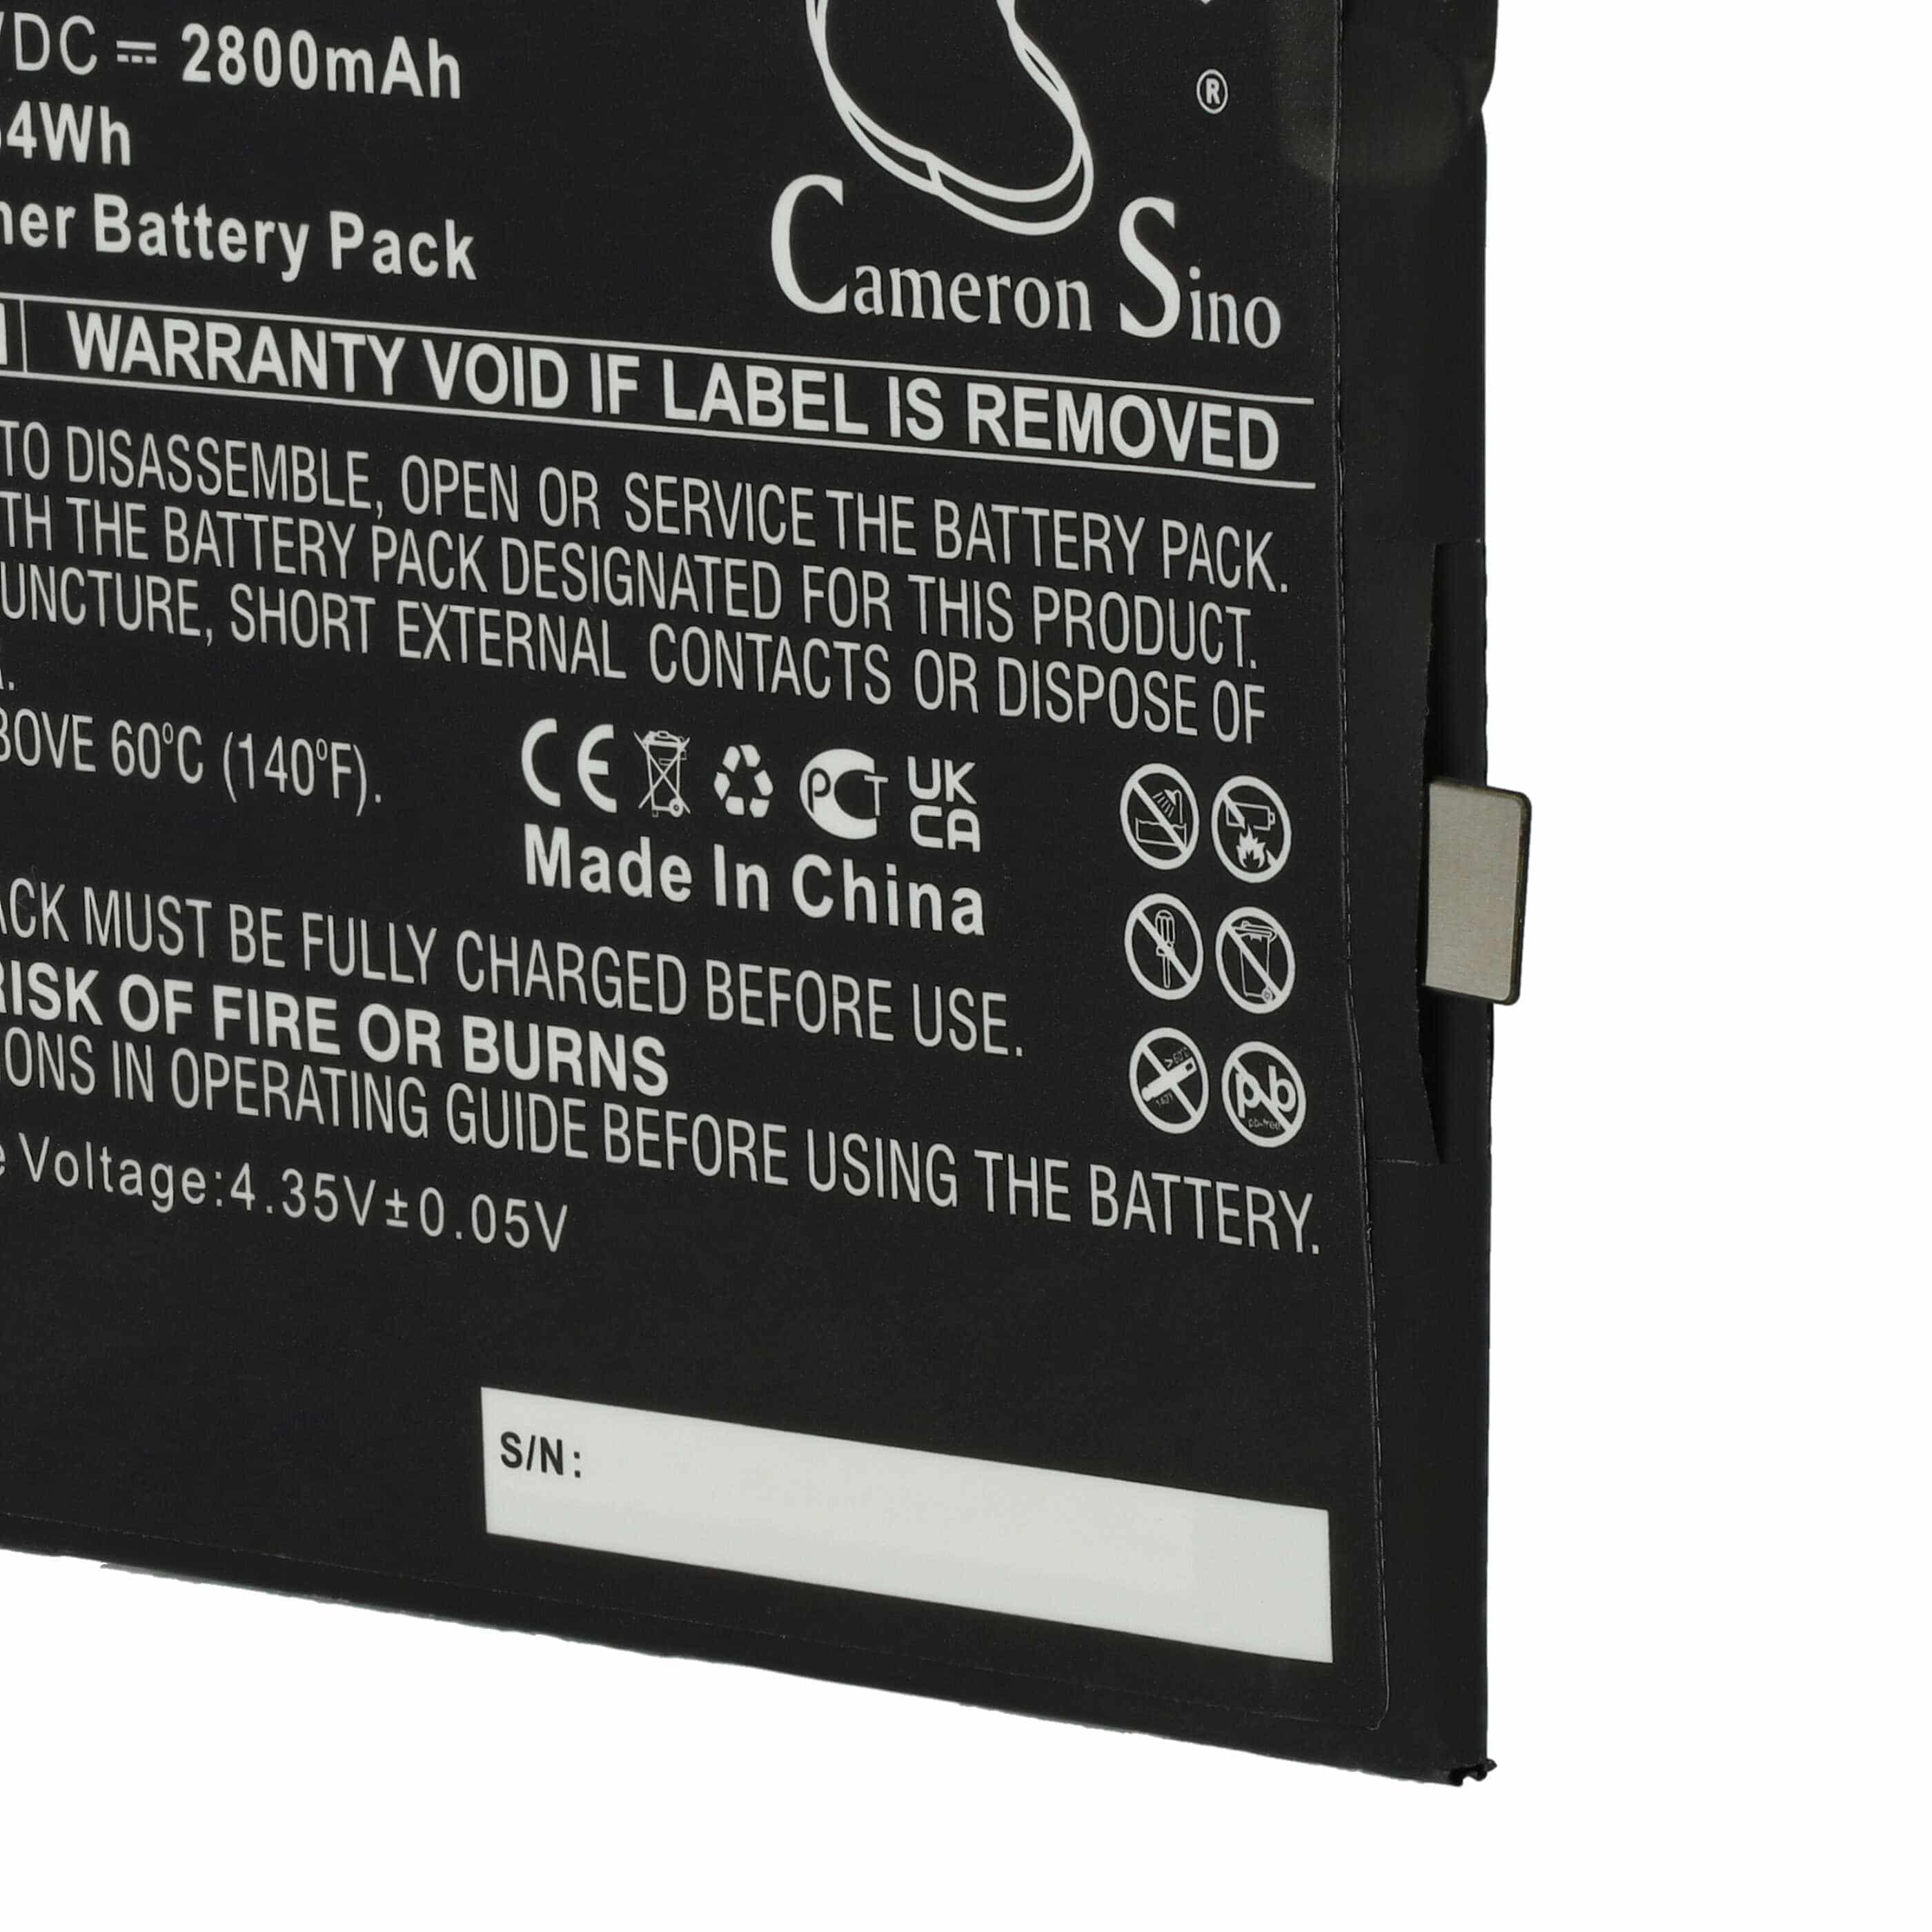 Batterie remplace Archos AC55GR pour téléphone portable - 2800mAh, 3,8V, Li-polymère